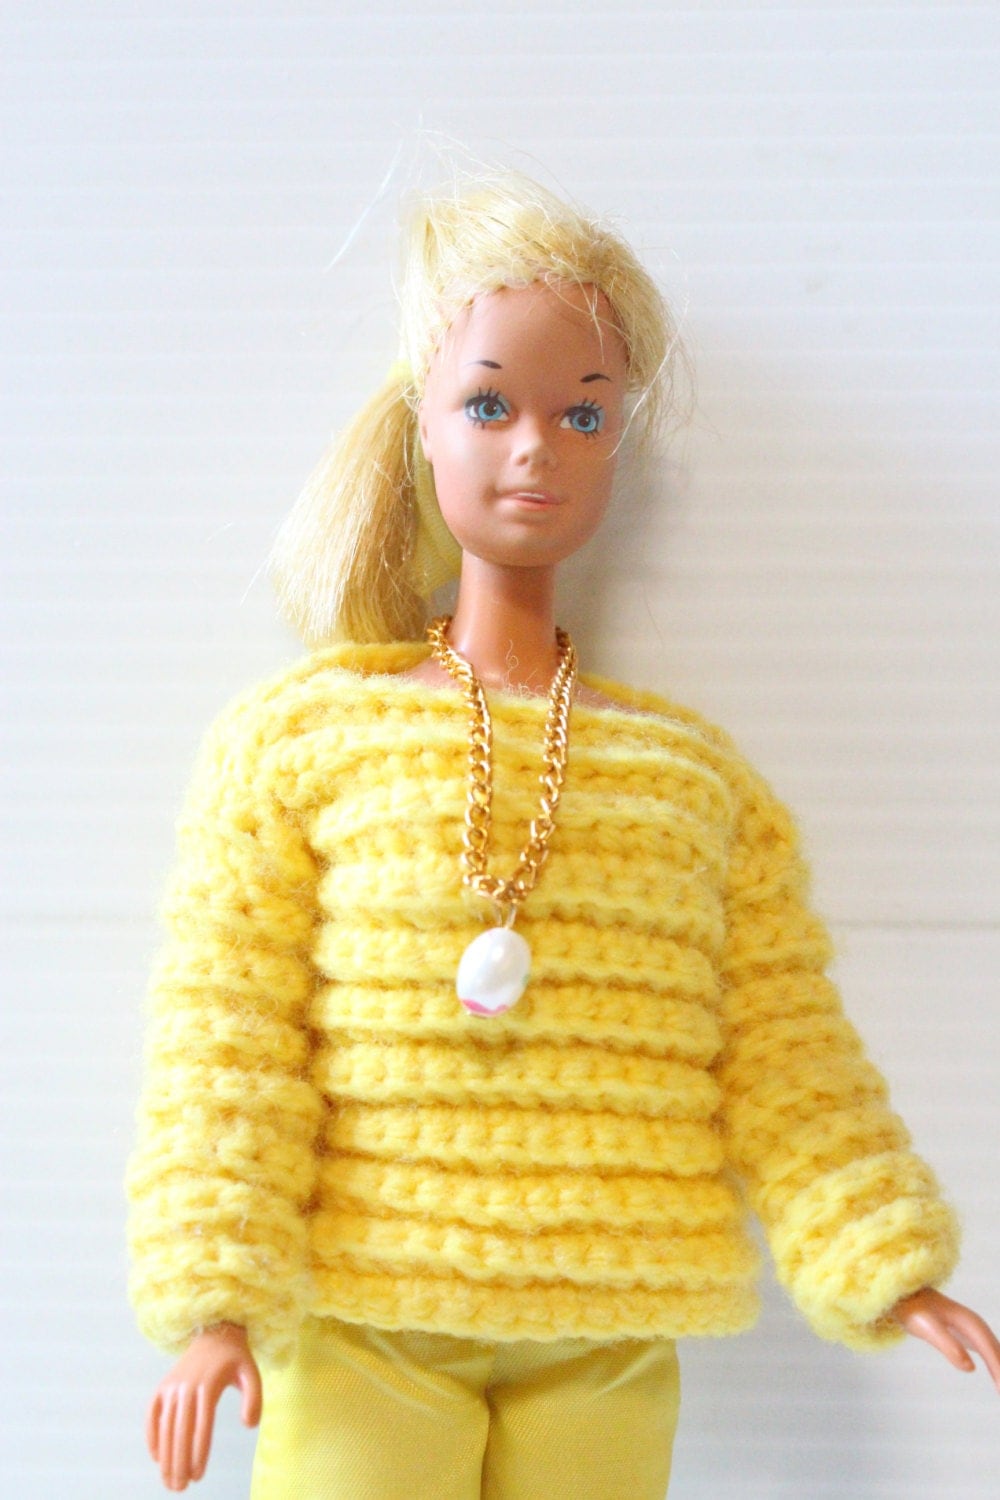 VINTAGE BARBIE DOLL 1960s Vintage Mattel Barbie made in